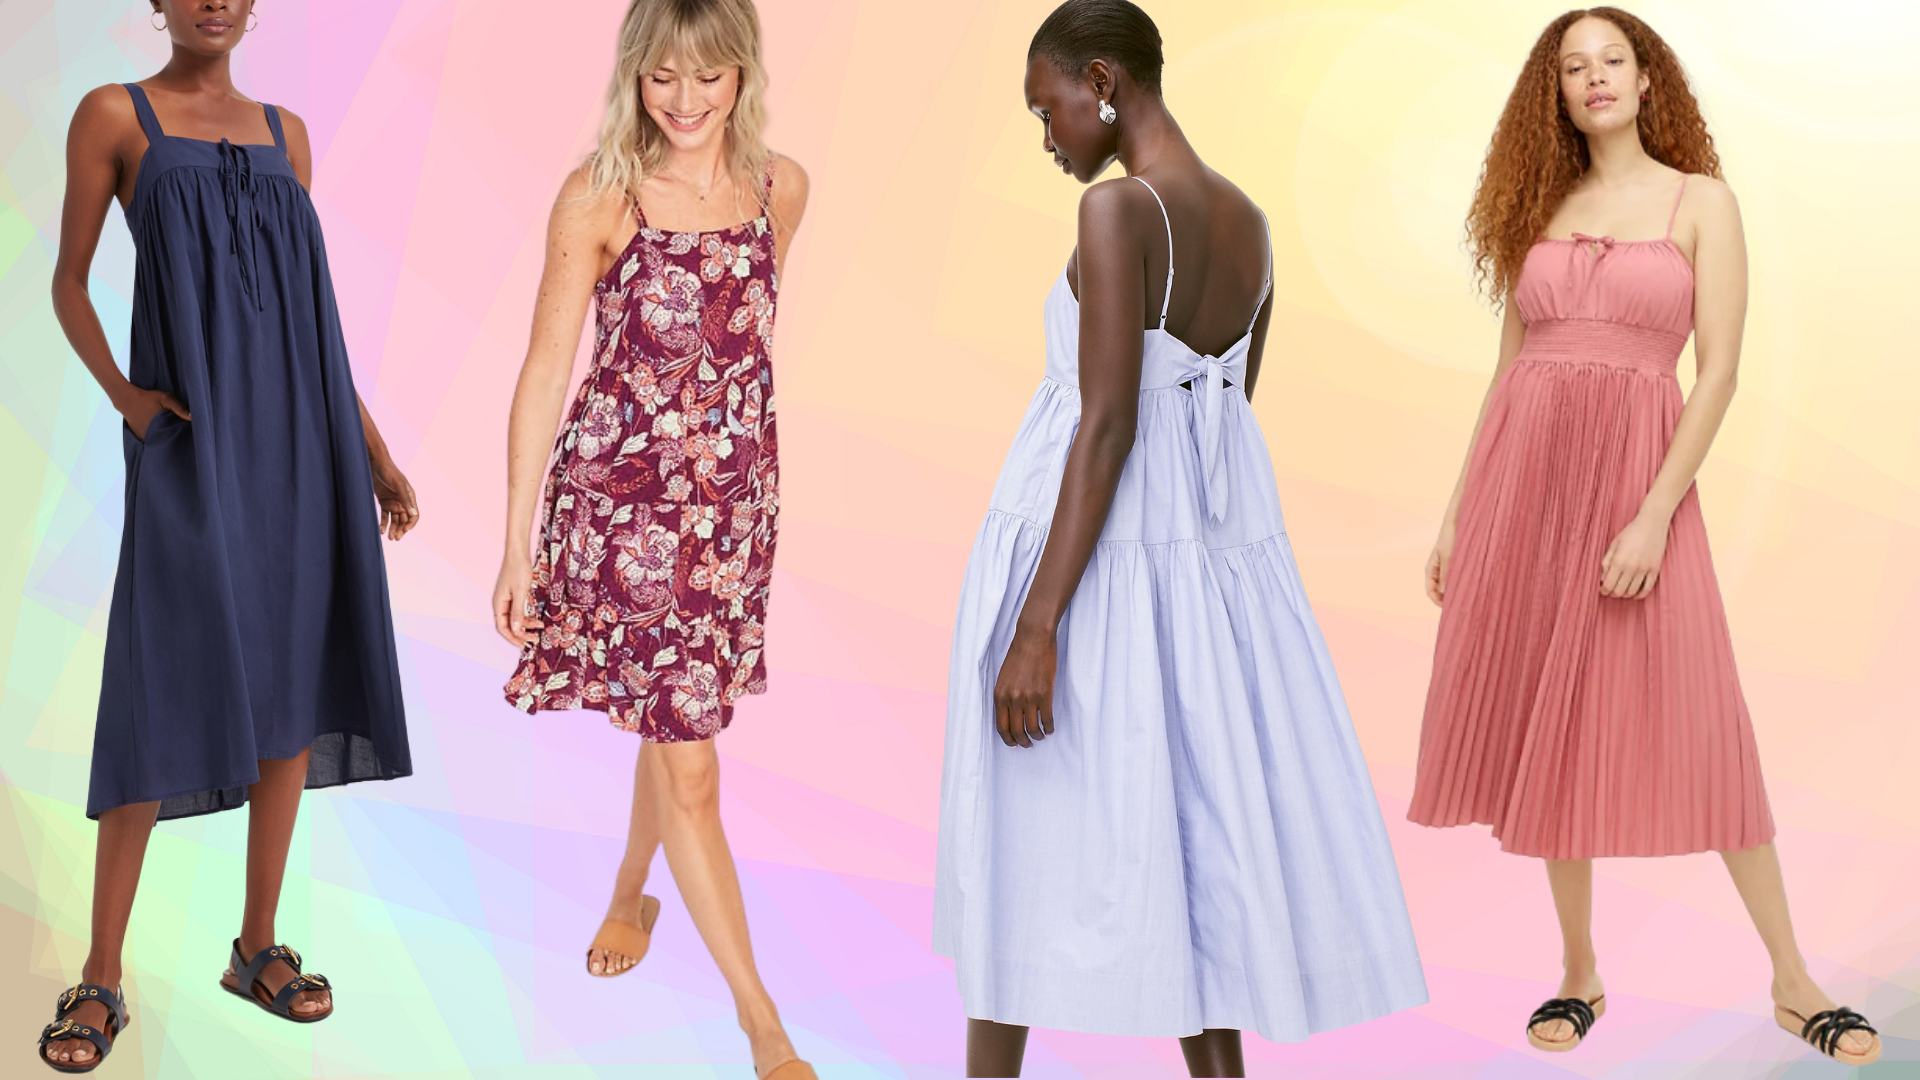 Buy > best stylish dress for women > in stock